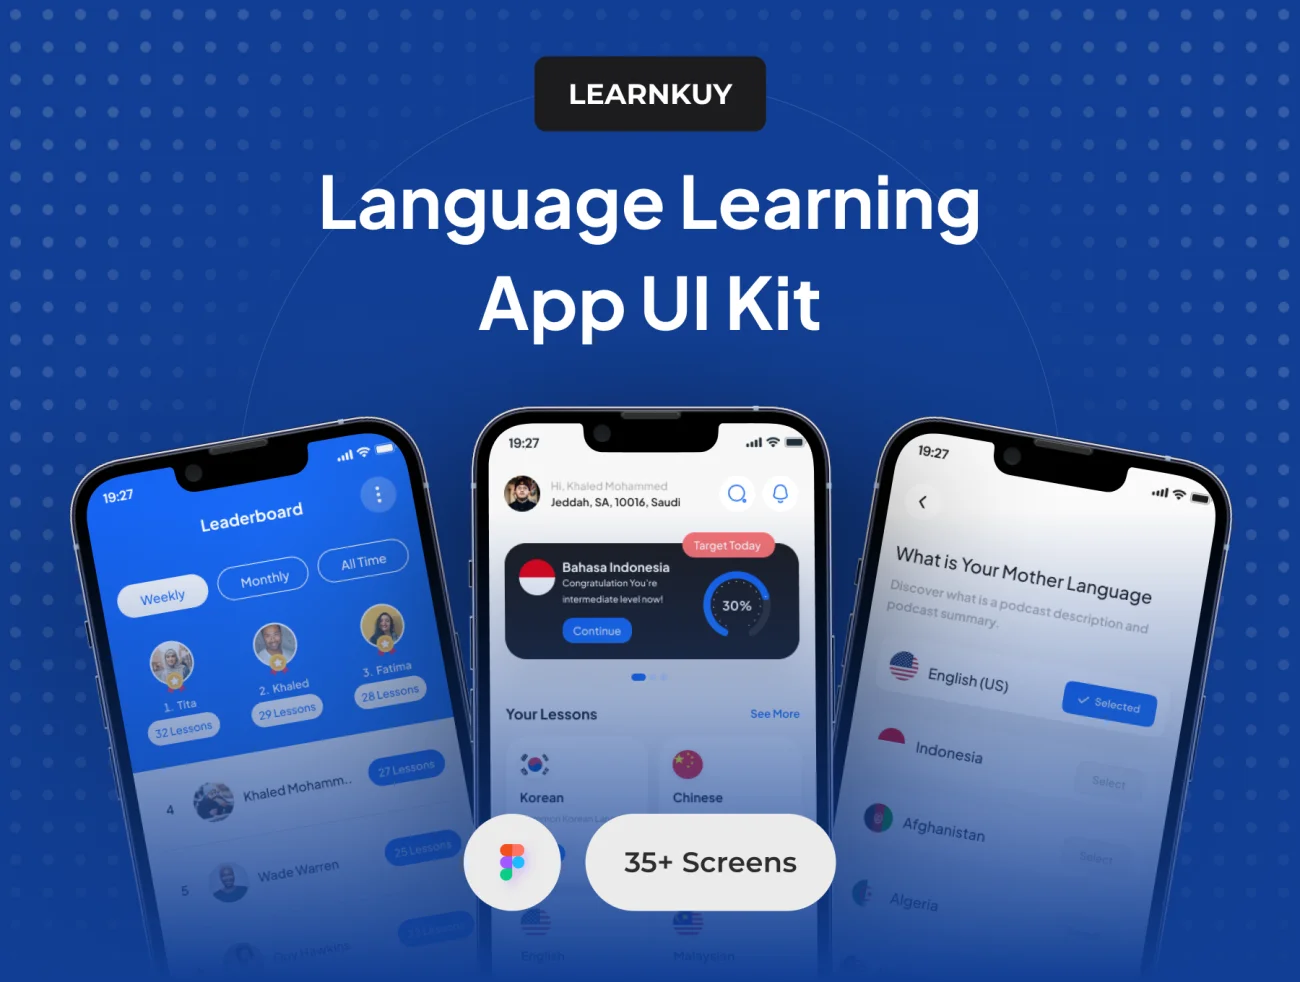 现代简约风格高级语言学习App UI套件 LearnKuy - Language Learning App UI Kit figma格式-UI/UX、ui套件、卡片式、图表、聊天-到位啦UI